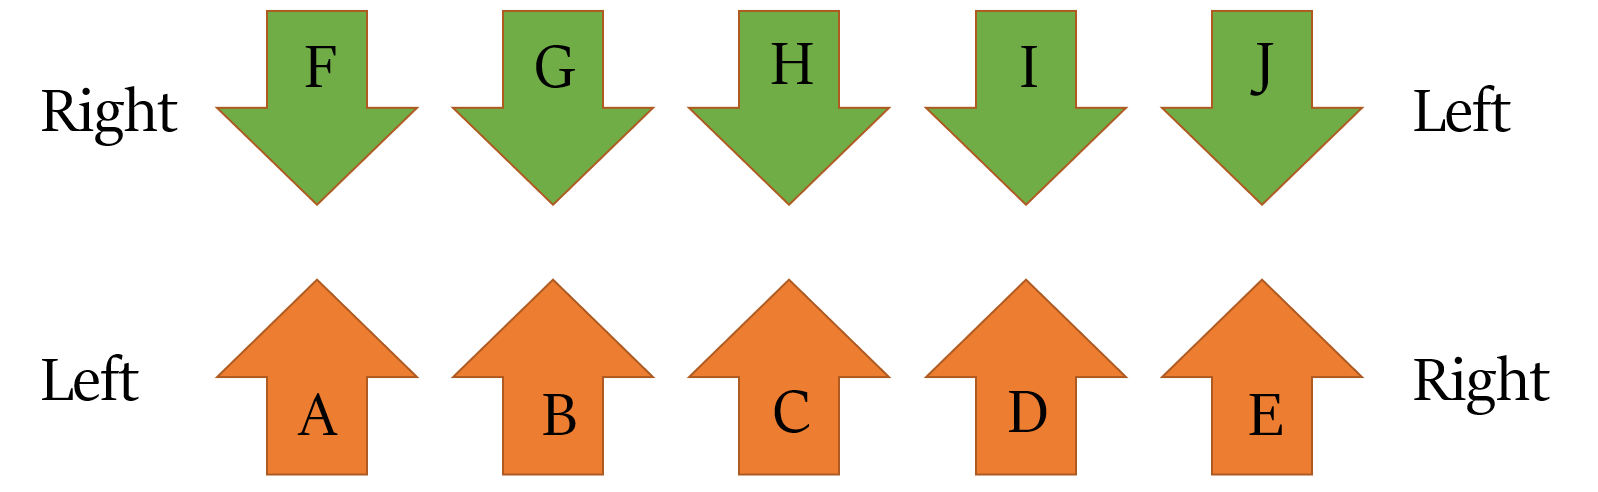 Linear arrangement